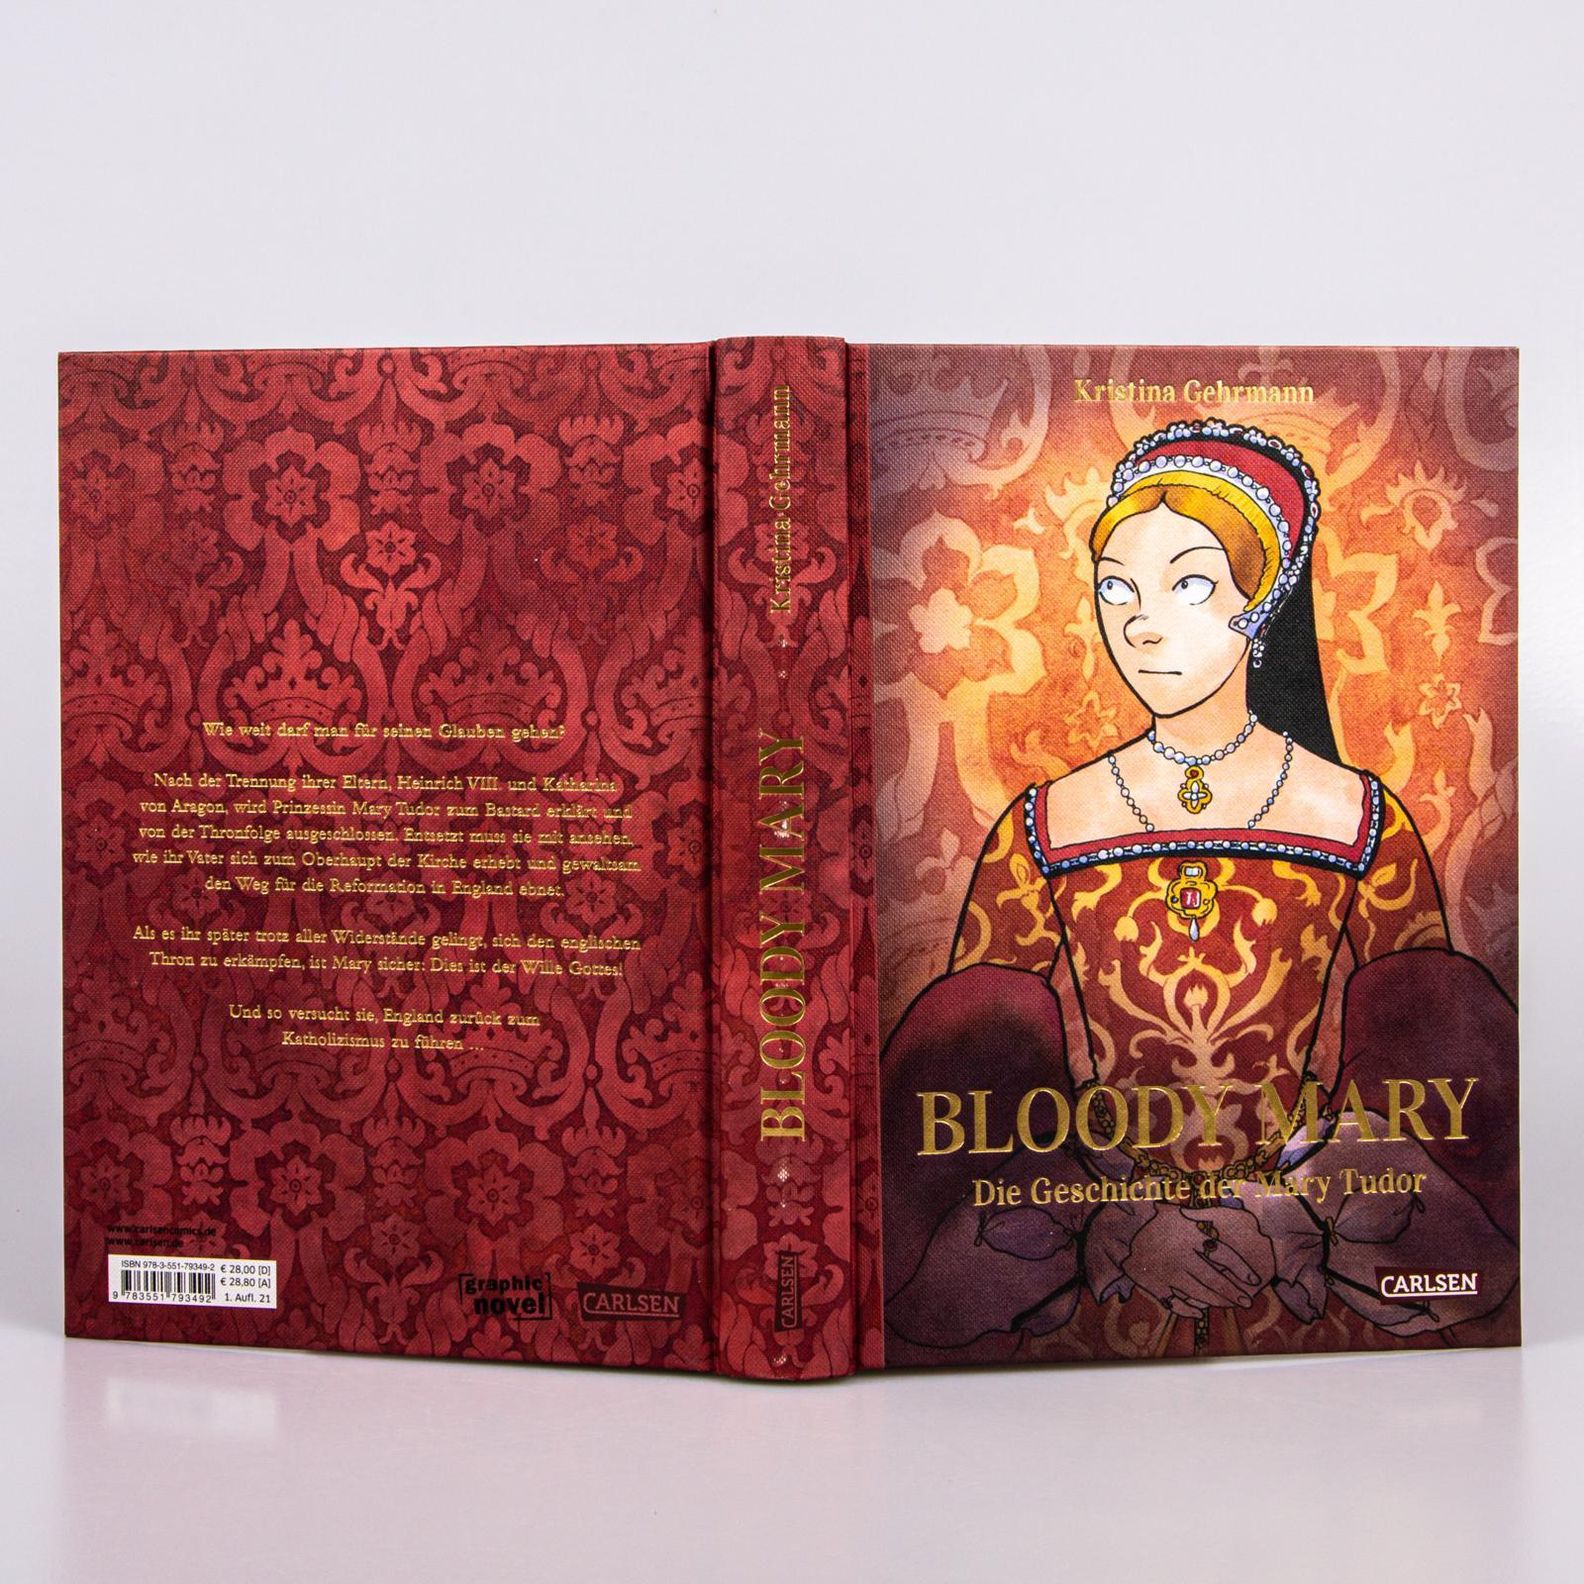 Bloody Mary Buch von Kristina Gehrmann versandkostenfrei bei Weltbild.de